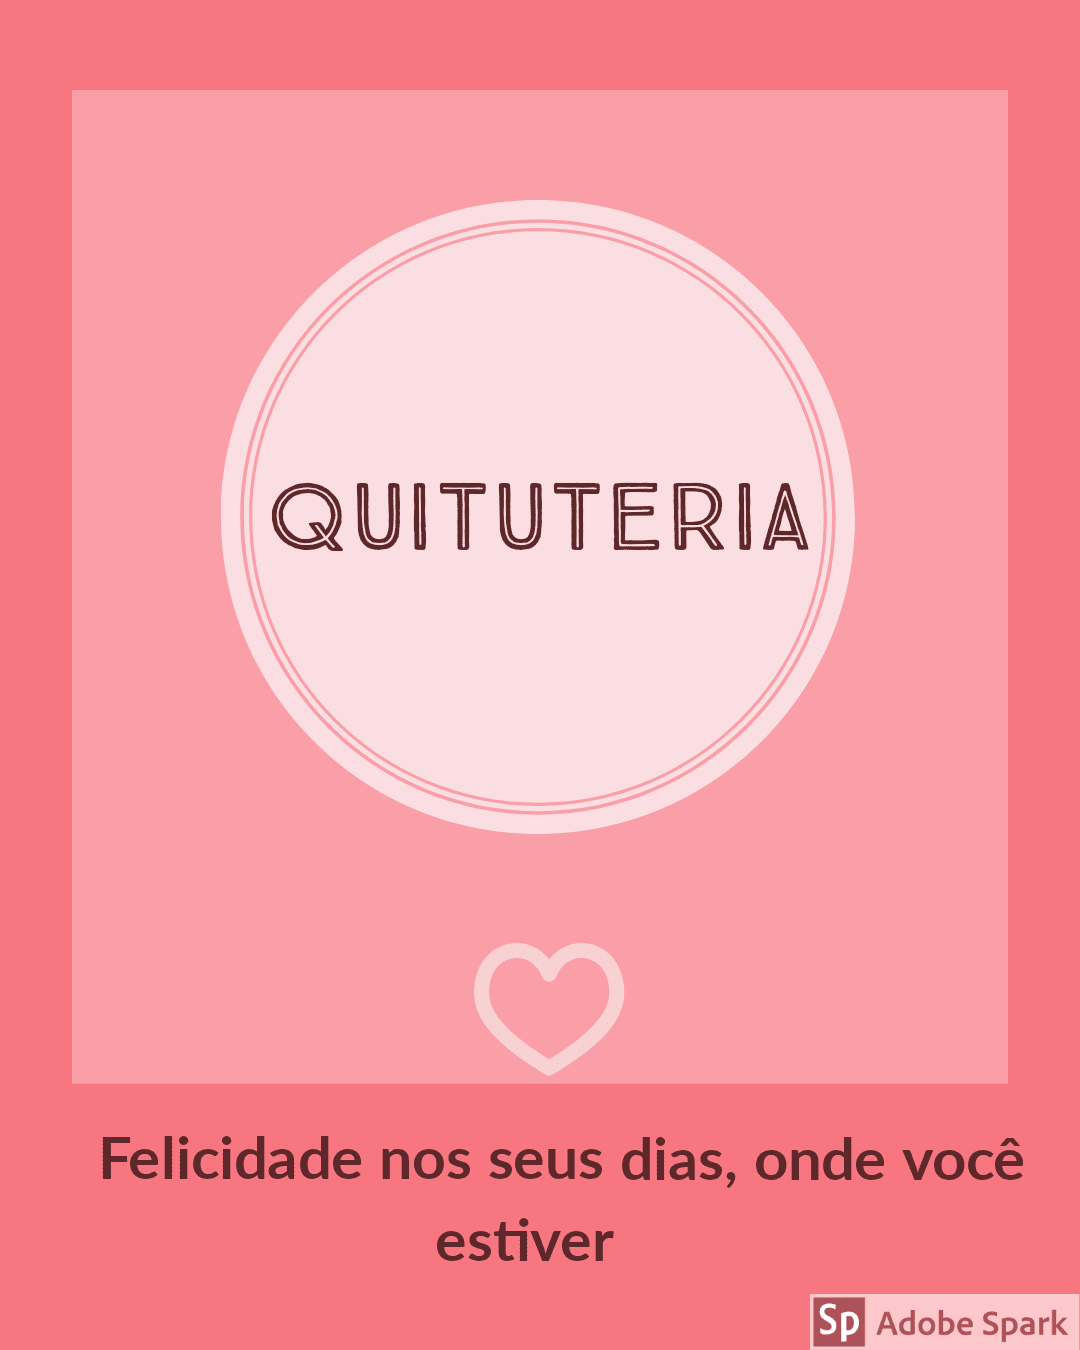 Quituteria